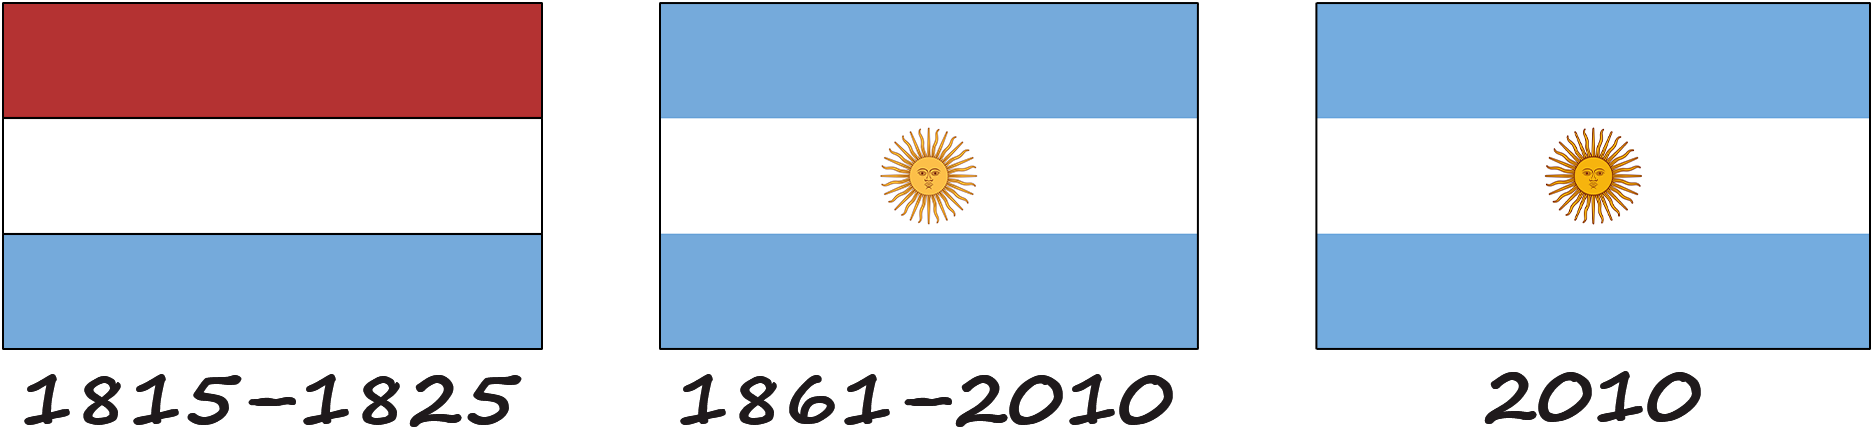 Historia de la bandera de Argentina